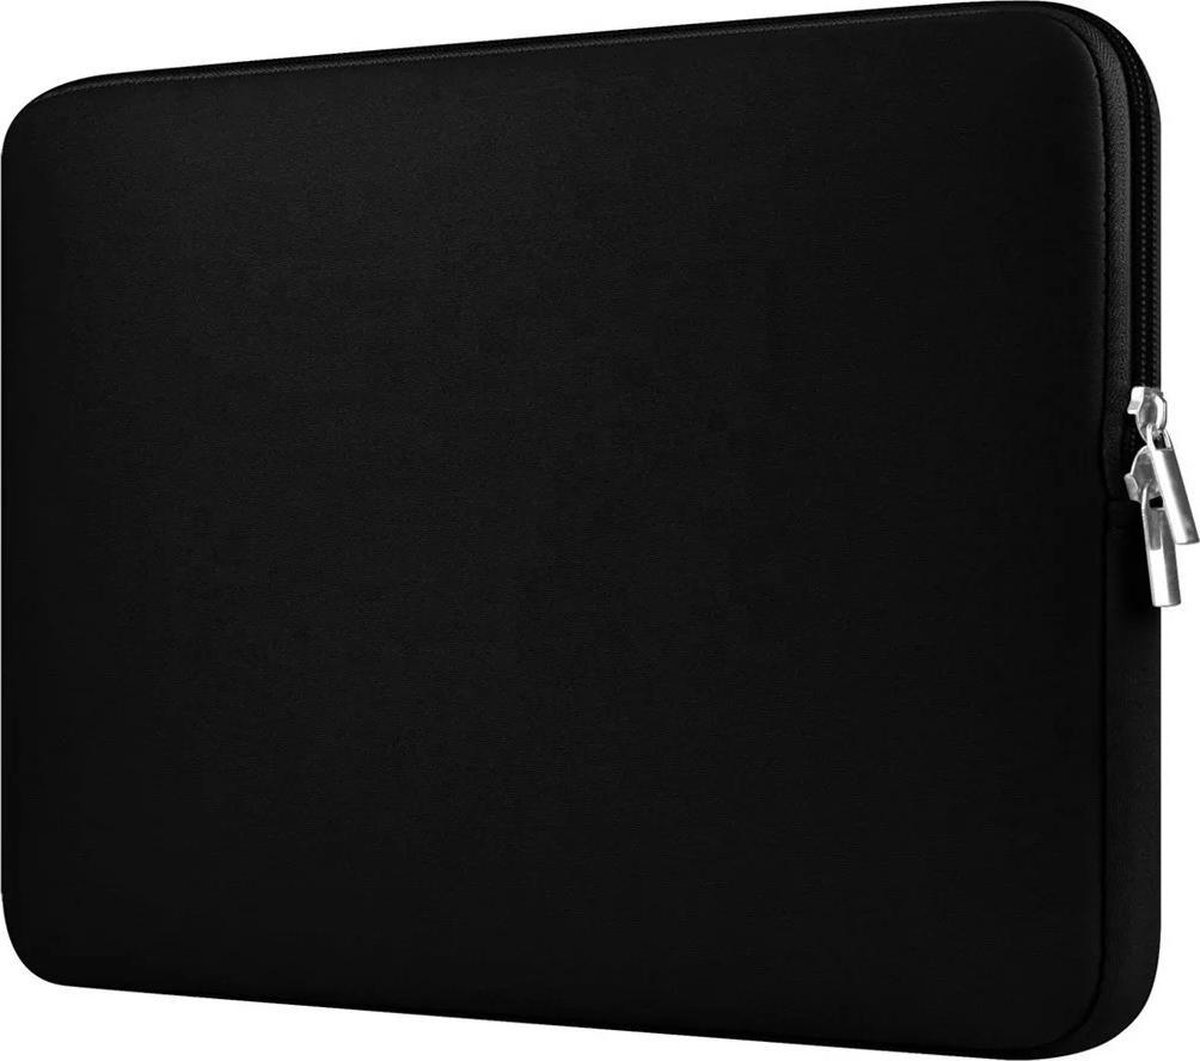 Laptoptas – case – 16 inch– stevige kwaliteit – soft touch – kleur zwart - unisex - spatwaterbestending